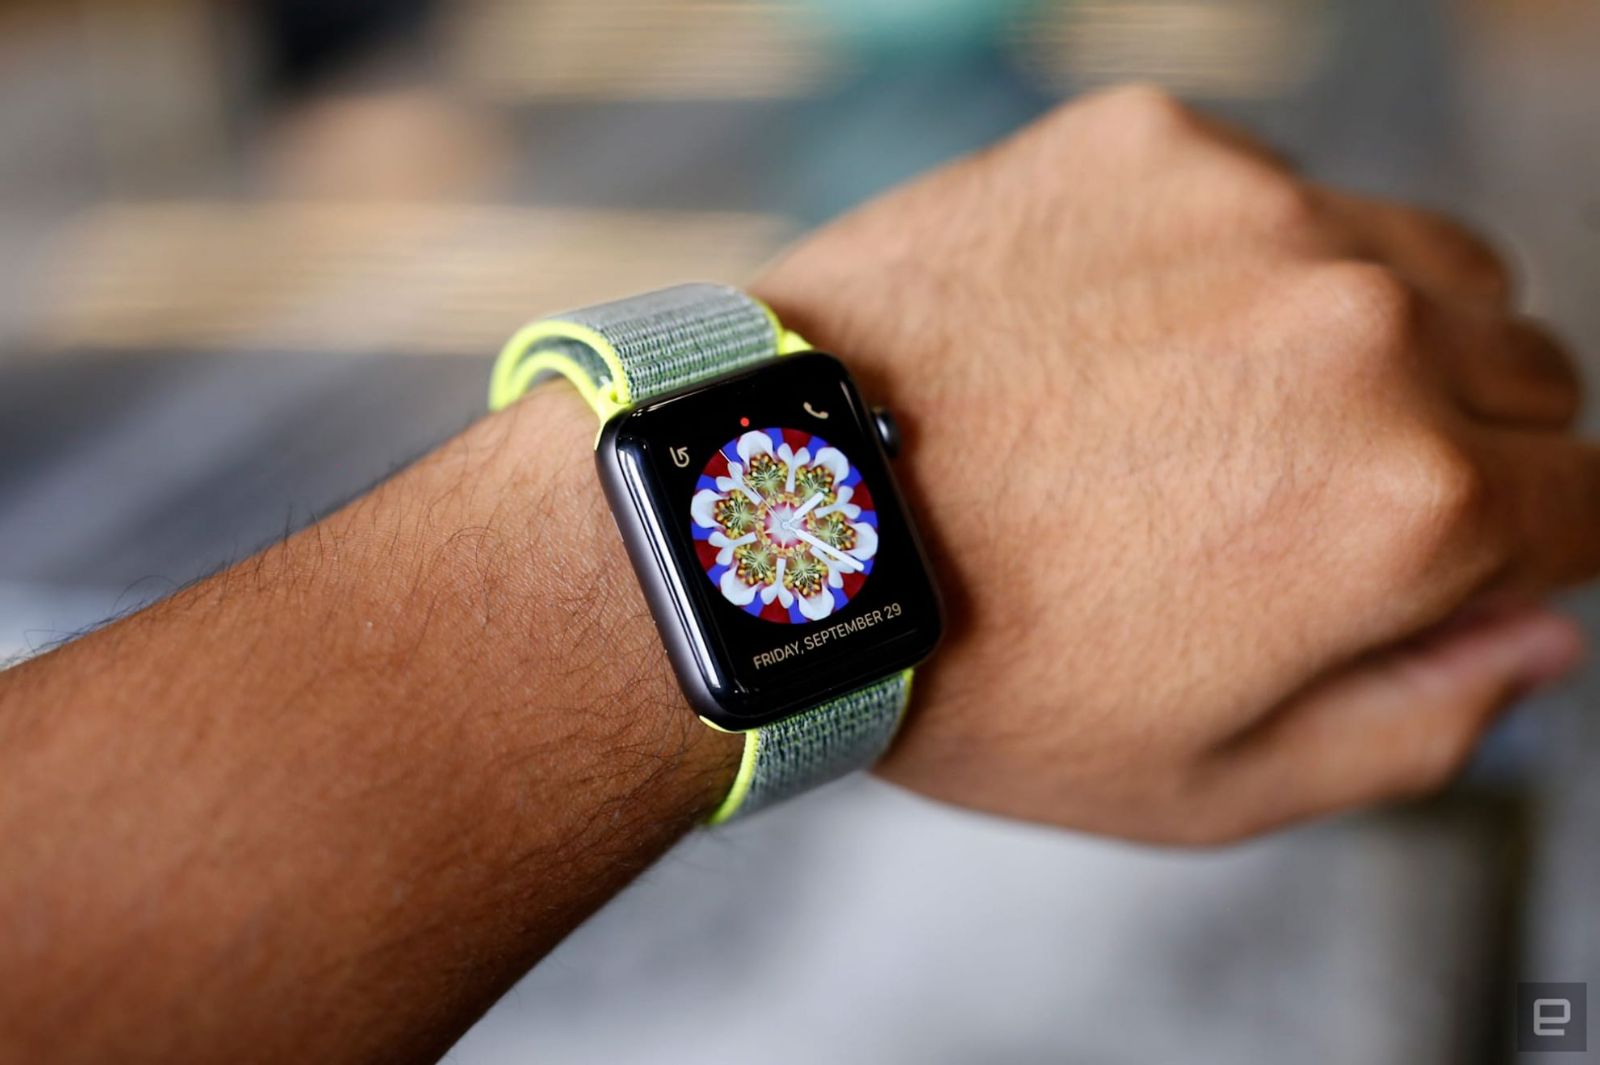 Tổng hợp hình nền đẹp cho apple watch với nhiều sự lựa chọn độc đáo